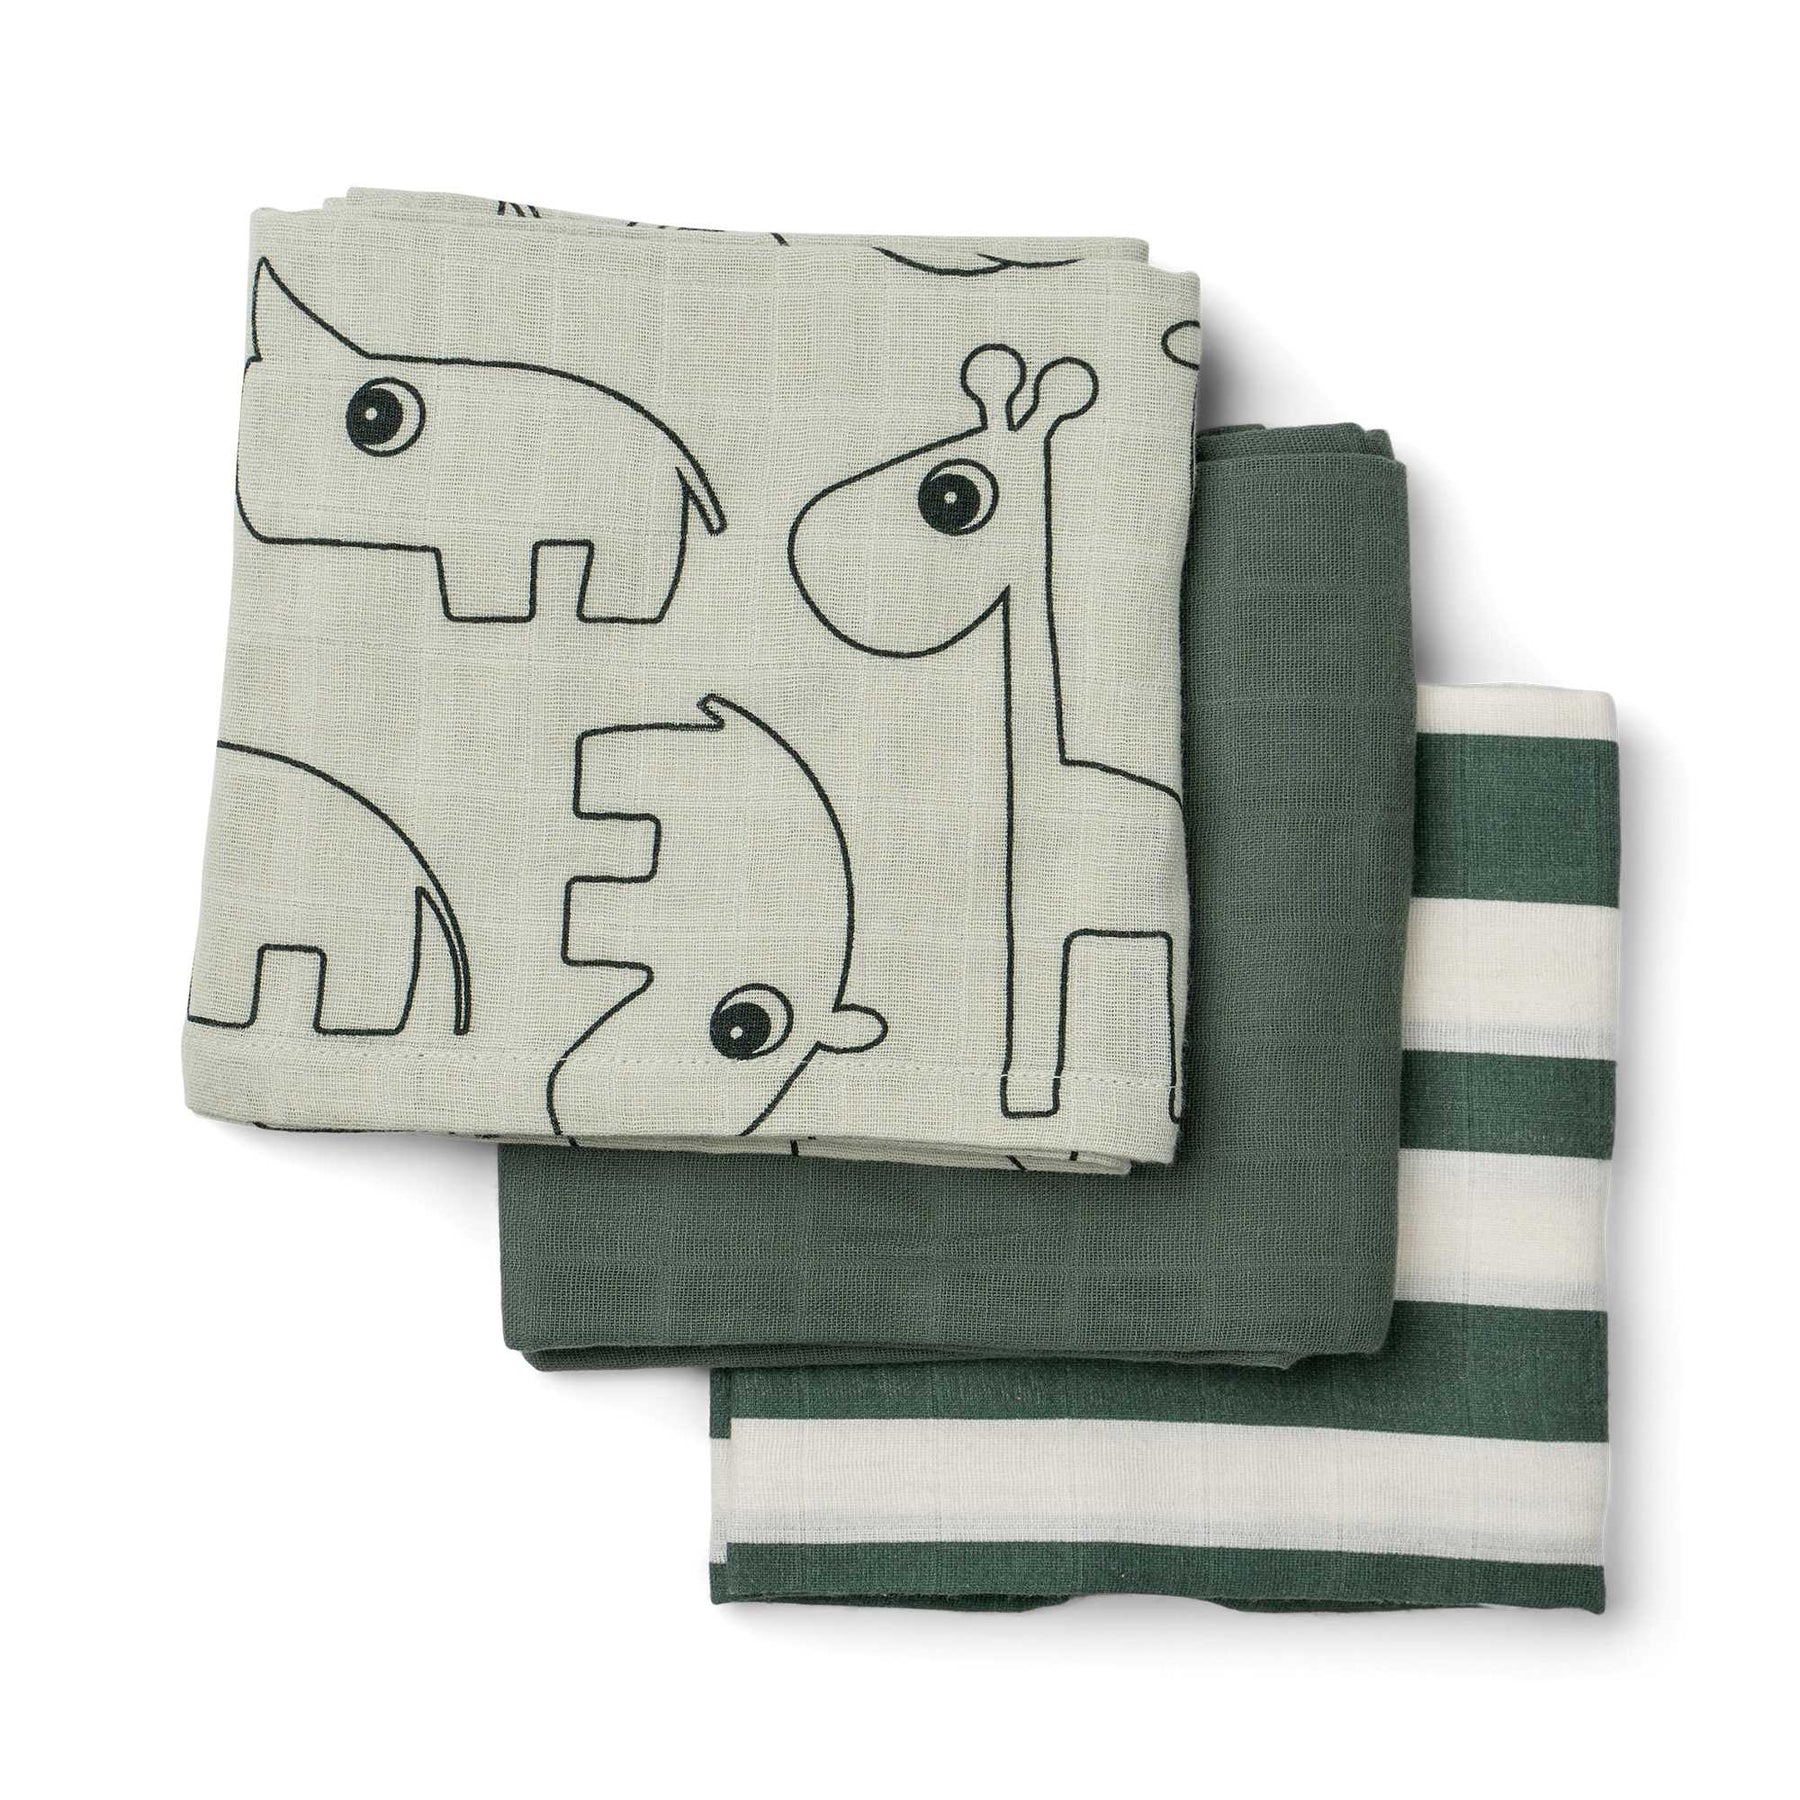 Burp cloth 3-pack - Deer friends - Green - Front